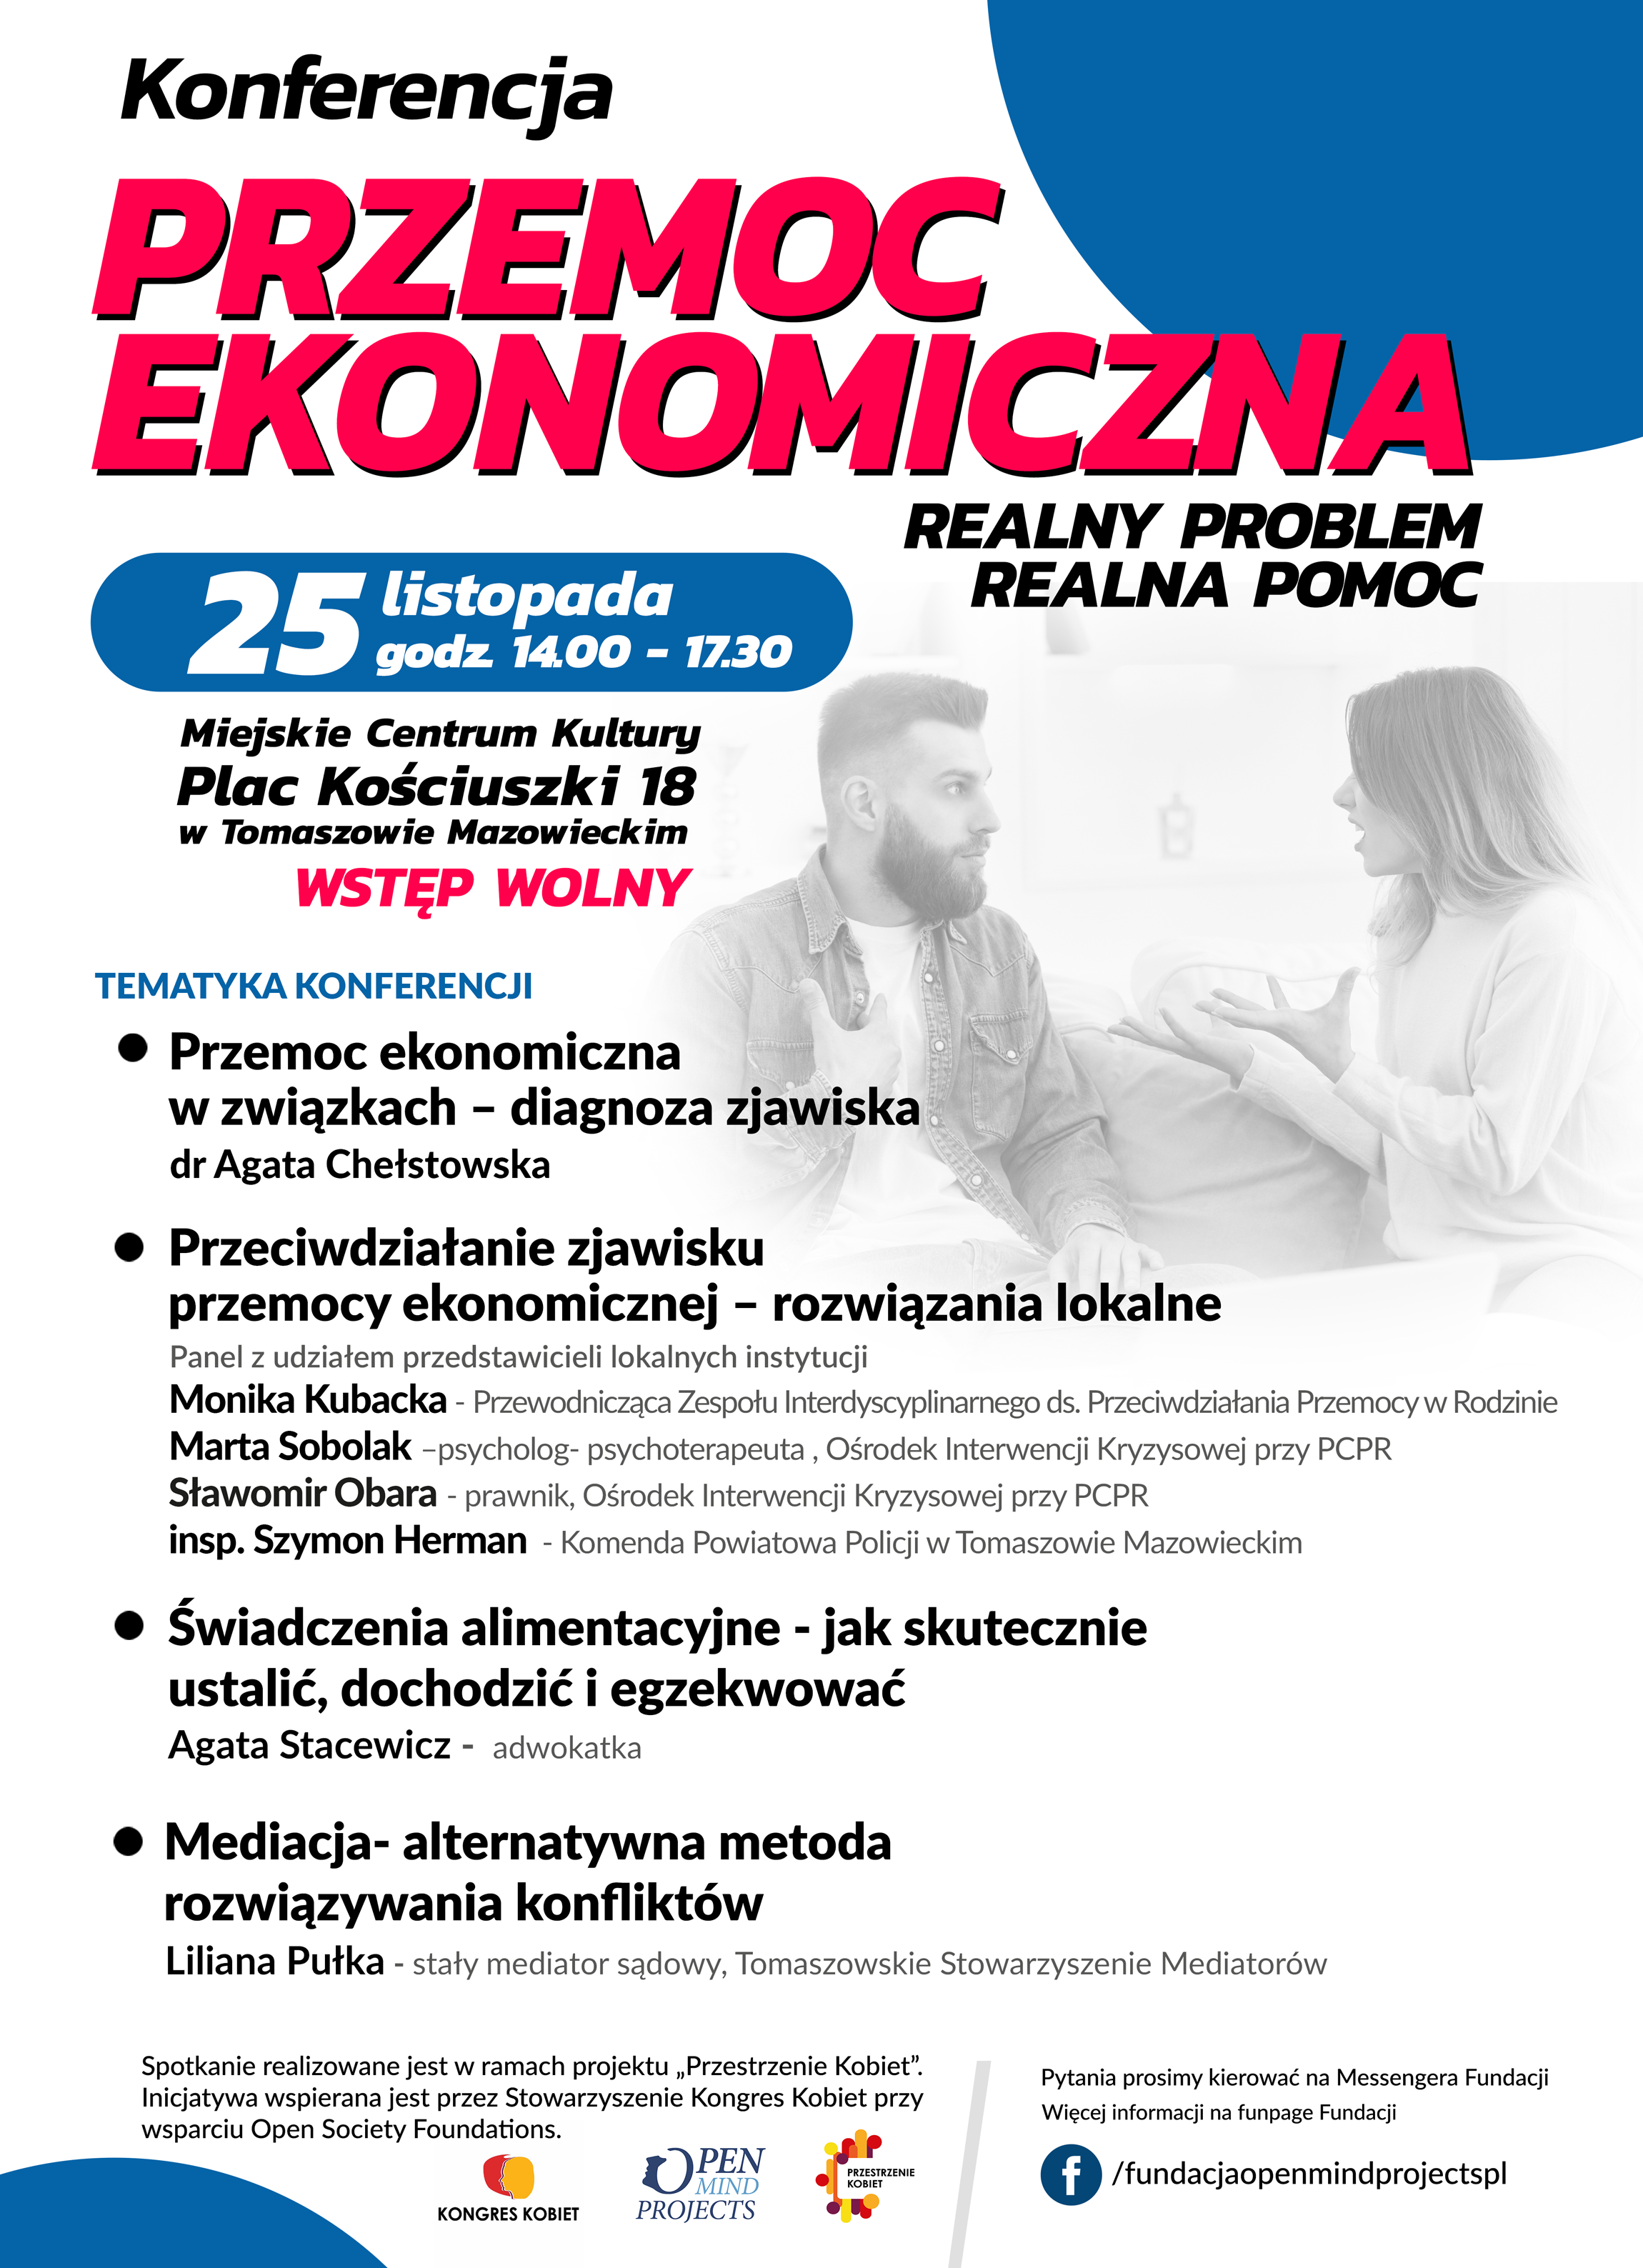 Plakat konferencji przemoc ekonomiczna 25 listopada 2019